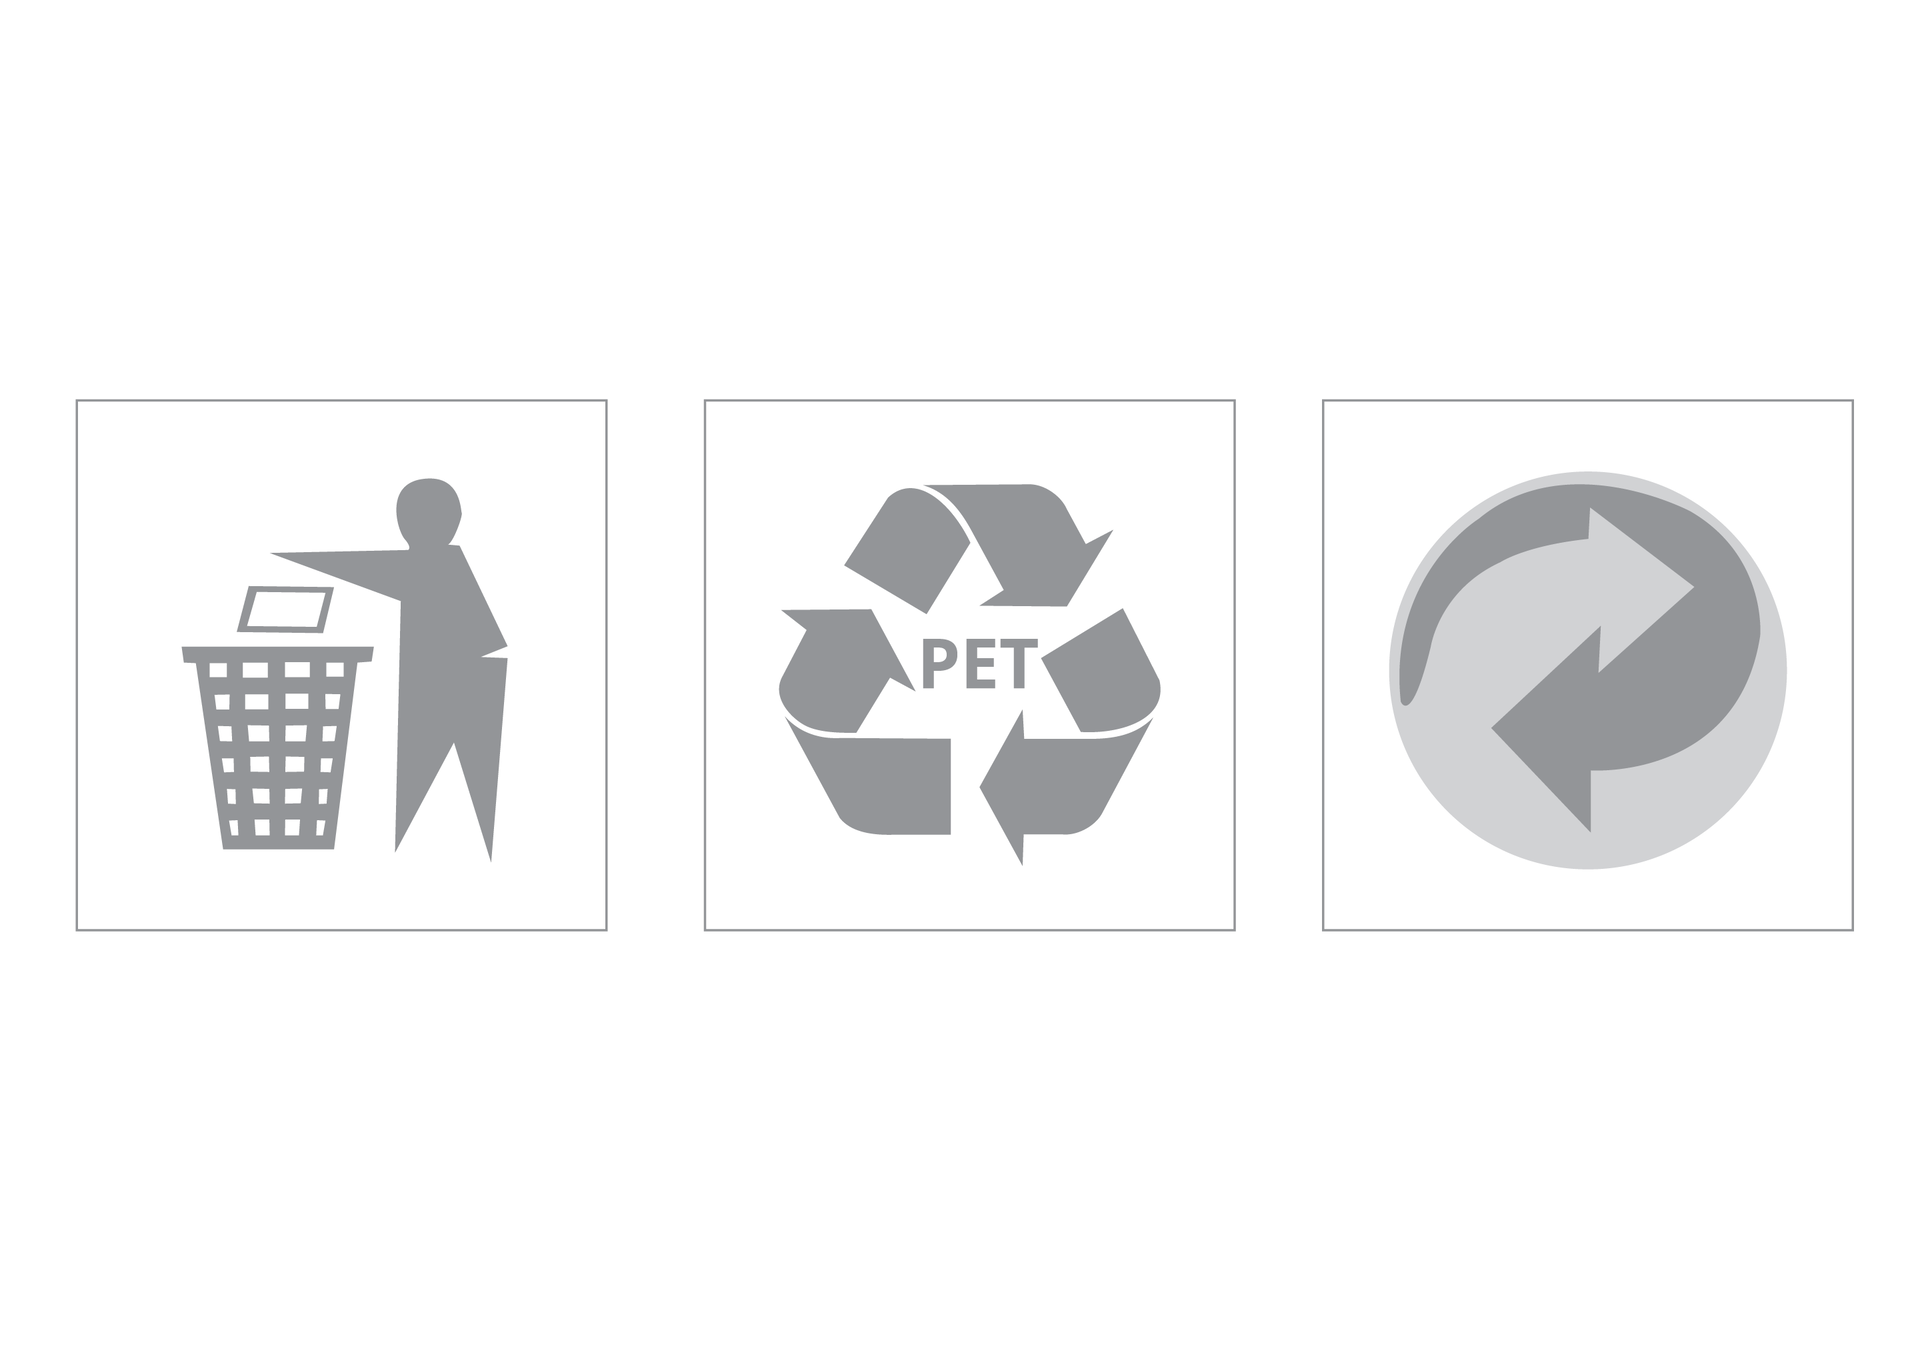 Ilustracja prezentuje trzy przykładowe symbole proekologiczne, którymi są oznaczone używane przez nas na codzień produkty.